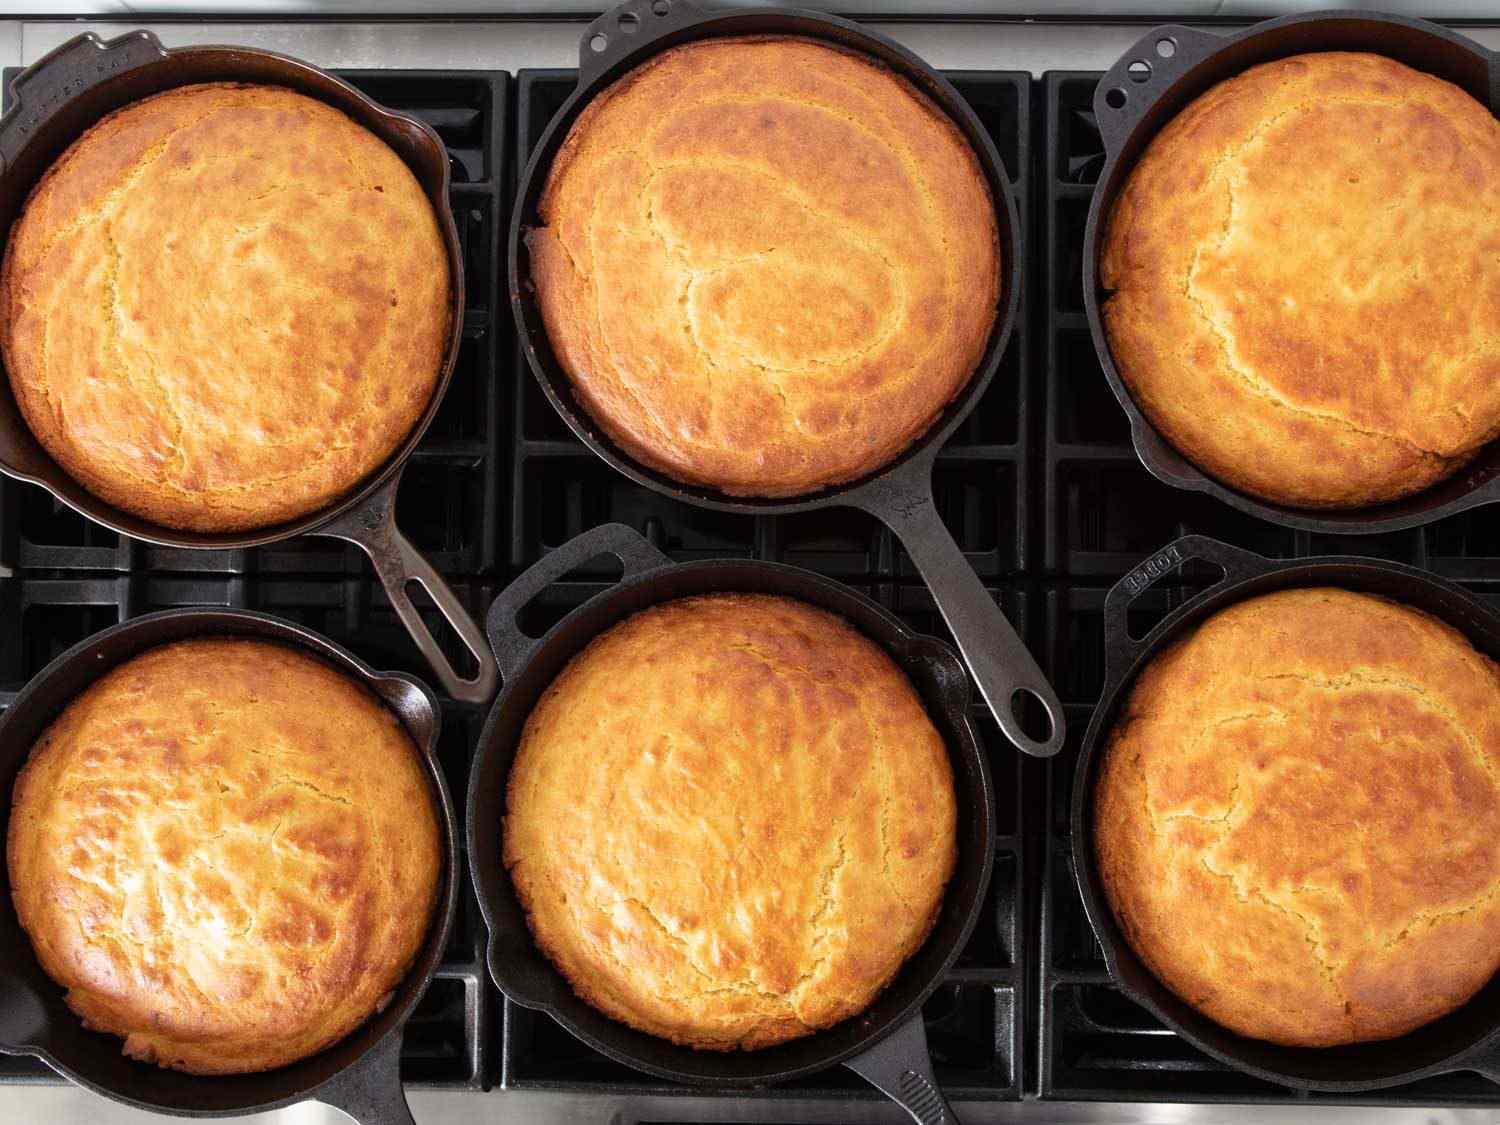 头顶上的镜头是几个铸铁煎锅，每个煎锅里都盛着金黄色的玉米面包;煎锅与煎锅之间的区别是无法辨别的。